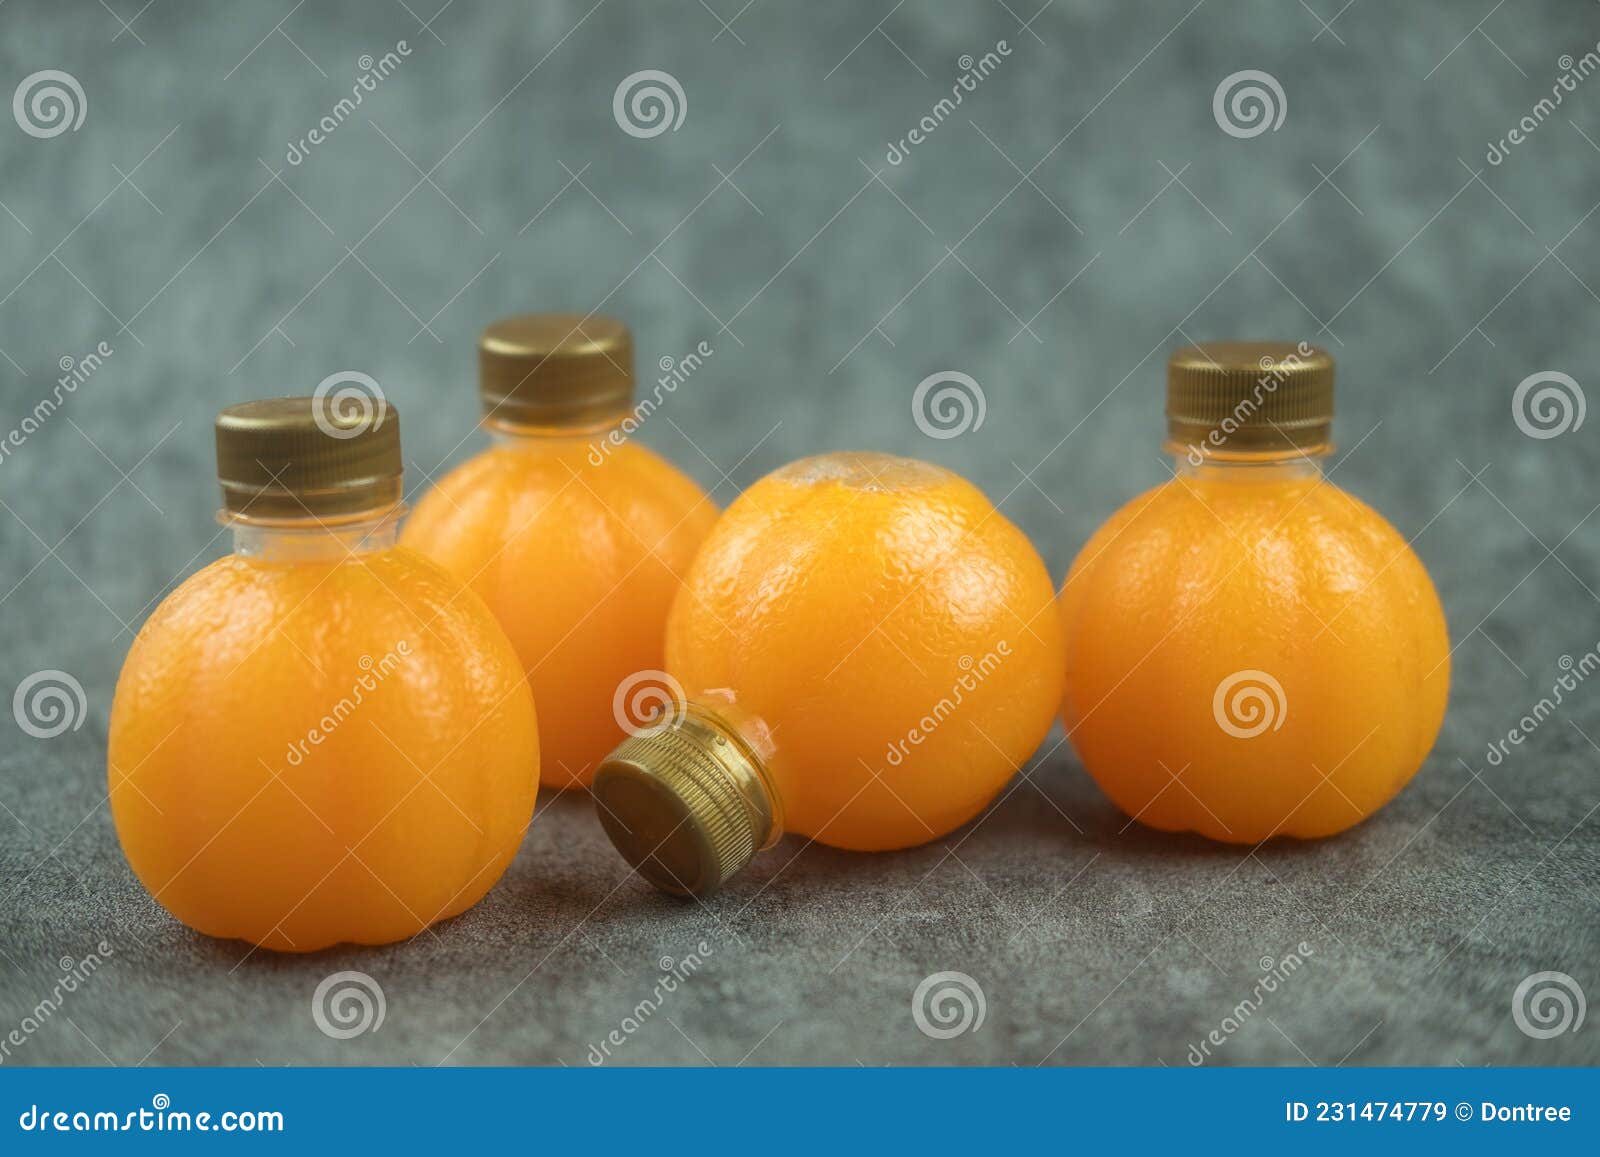 Jus D'orange Frais Dans Une Petite Bouteille En Plastique Orange Avec  Couvercle or Image stock - Image du concept, conception: 231474779